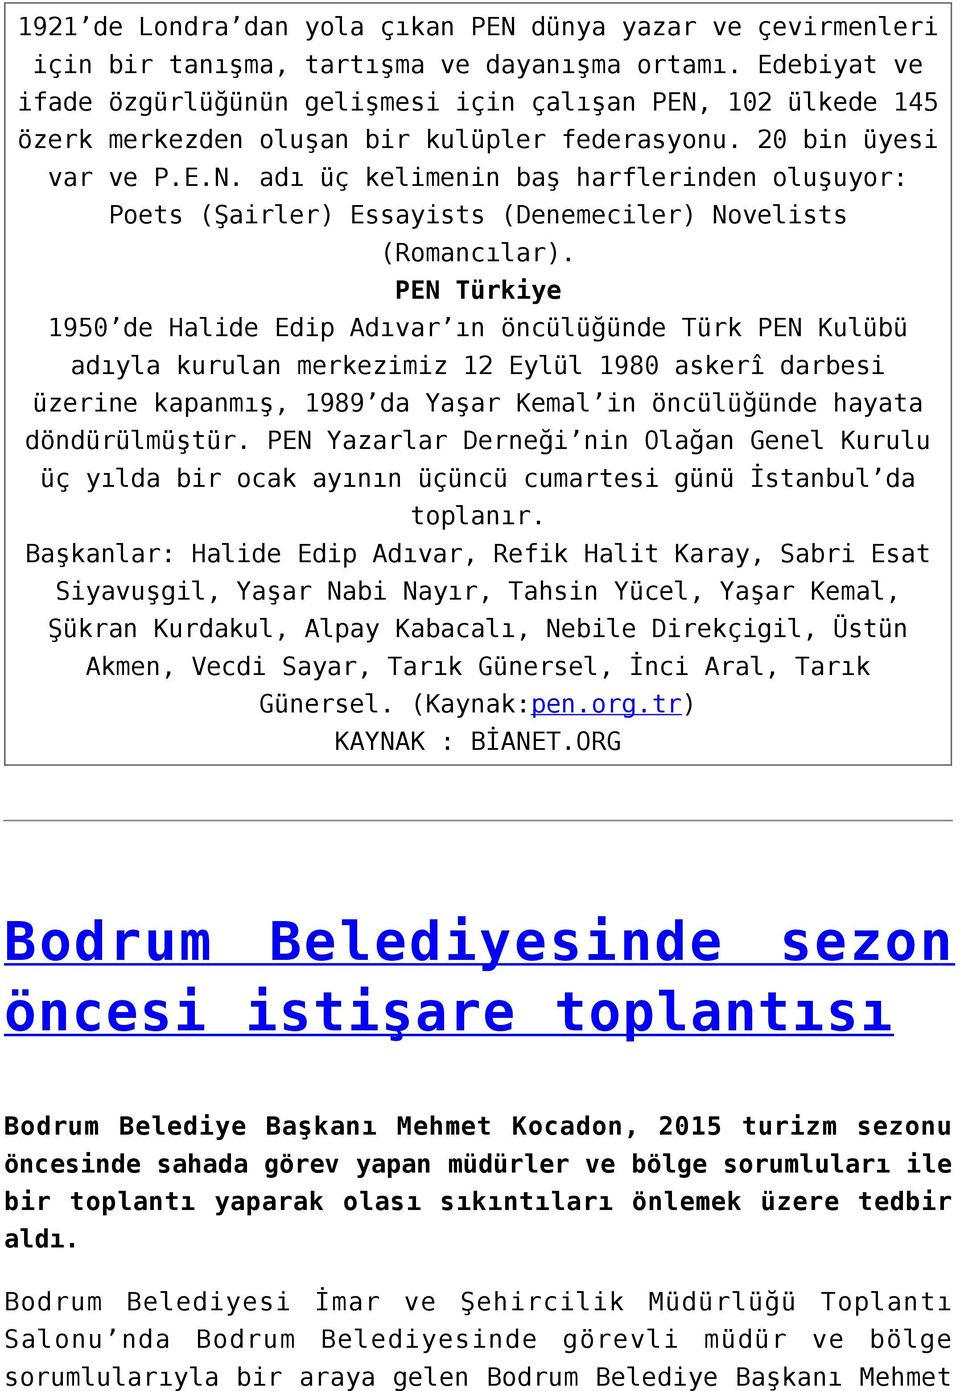 PEN Türkiye 1950 de Halide Edip Adıvar ın öncülüğünde Türk PEN Kulübü adıyla kurulan merkezimiz 12 Eylül 1980 askerî darbesi üzerine kapanmış, 1989 da Yaşar Kemal in öncülüğünde hayata döndürülmüştür.